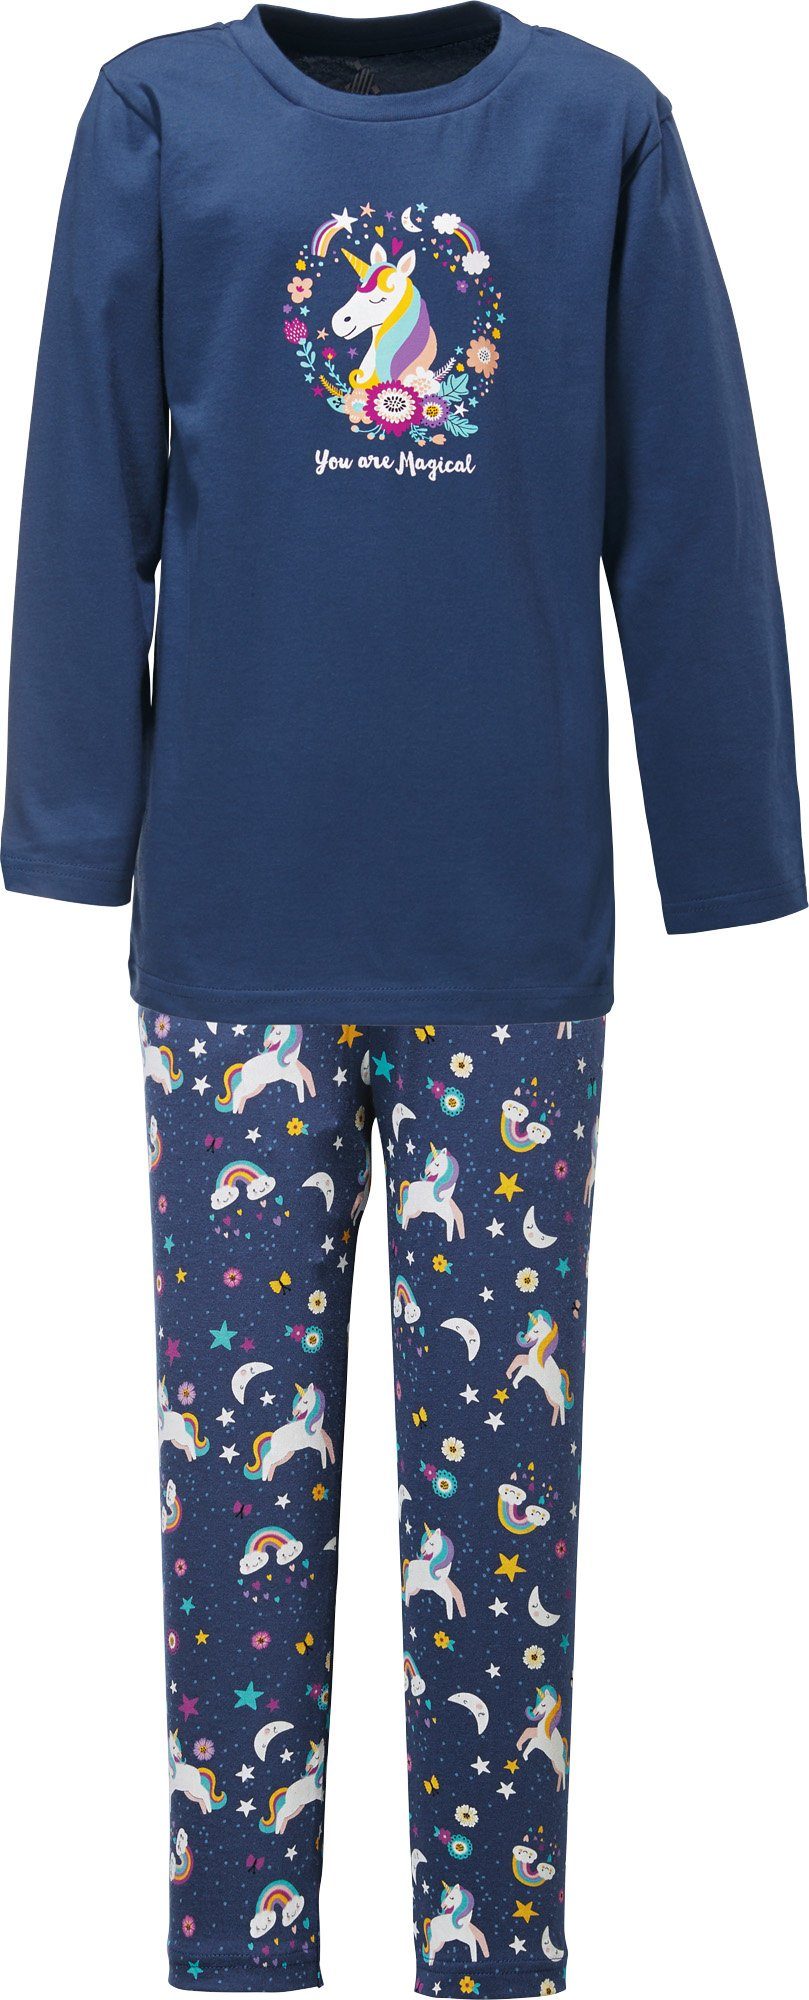 Erwin Müller Pyjama Kinder-Schlafanzug Single-Jersey Tiermotive